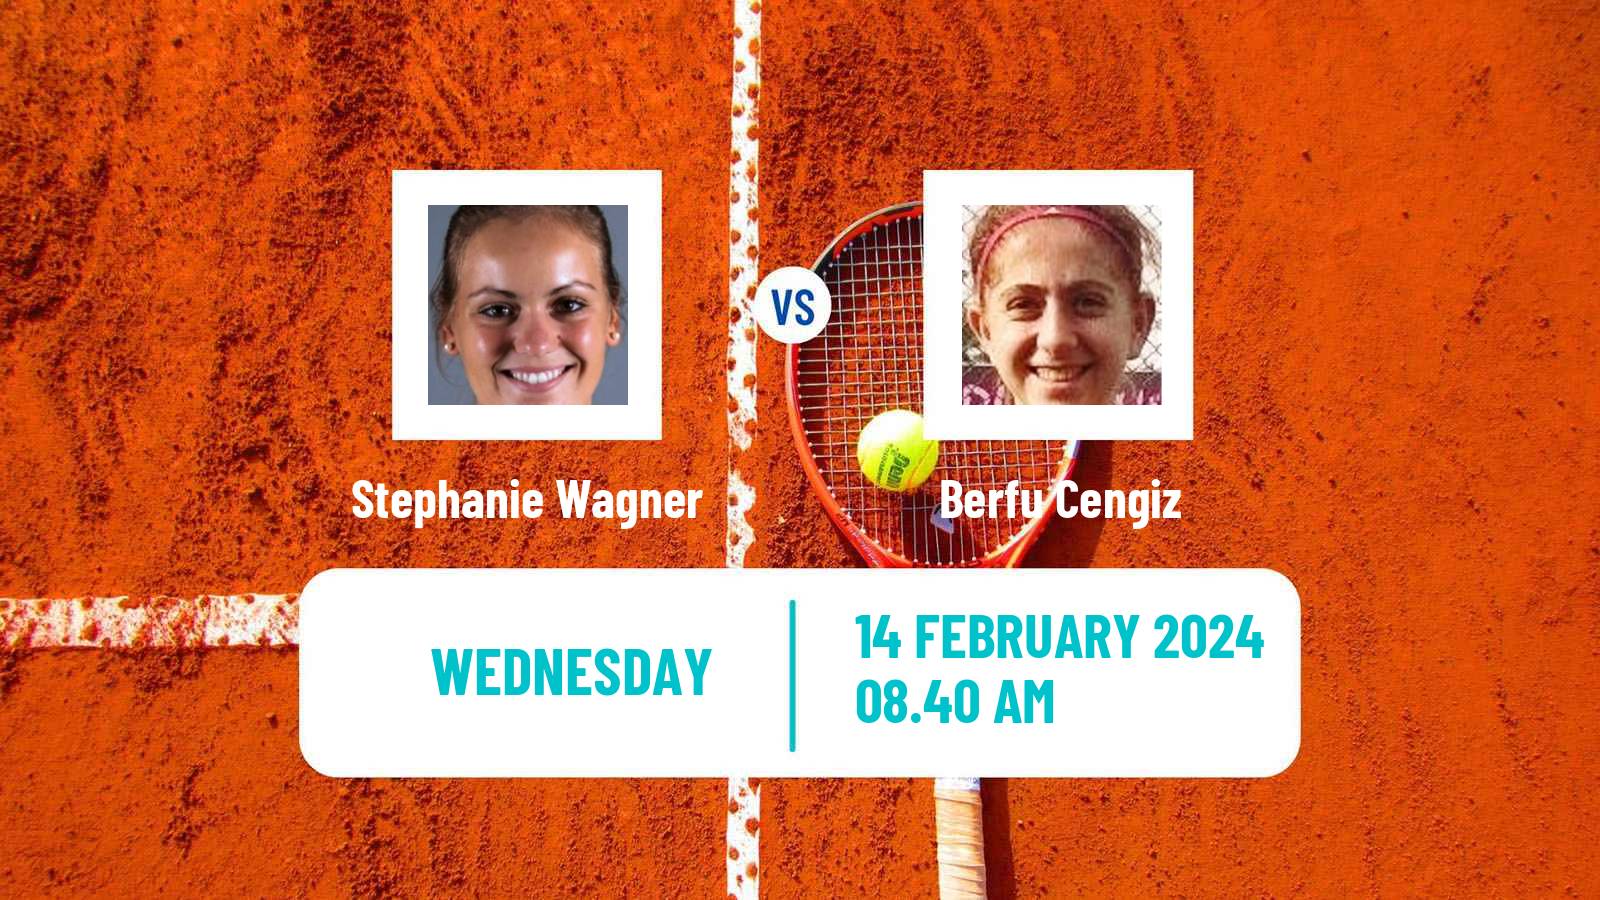 Tennis ITF W75 Altenkirchen Women Stephanie Wagner - Berfu Cengiz